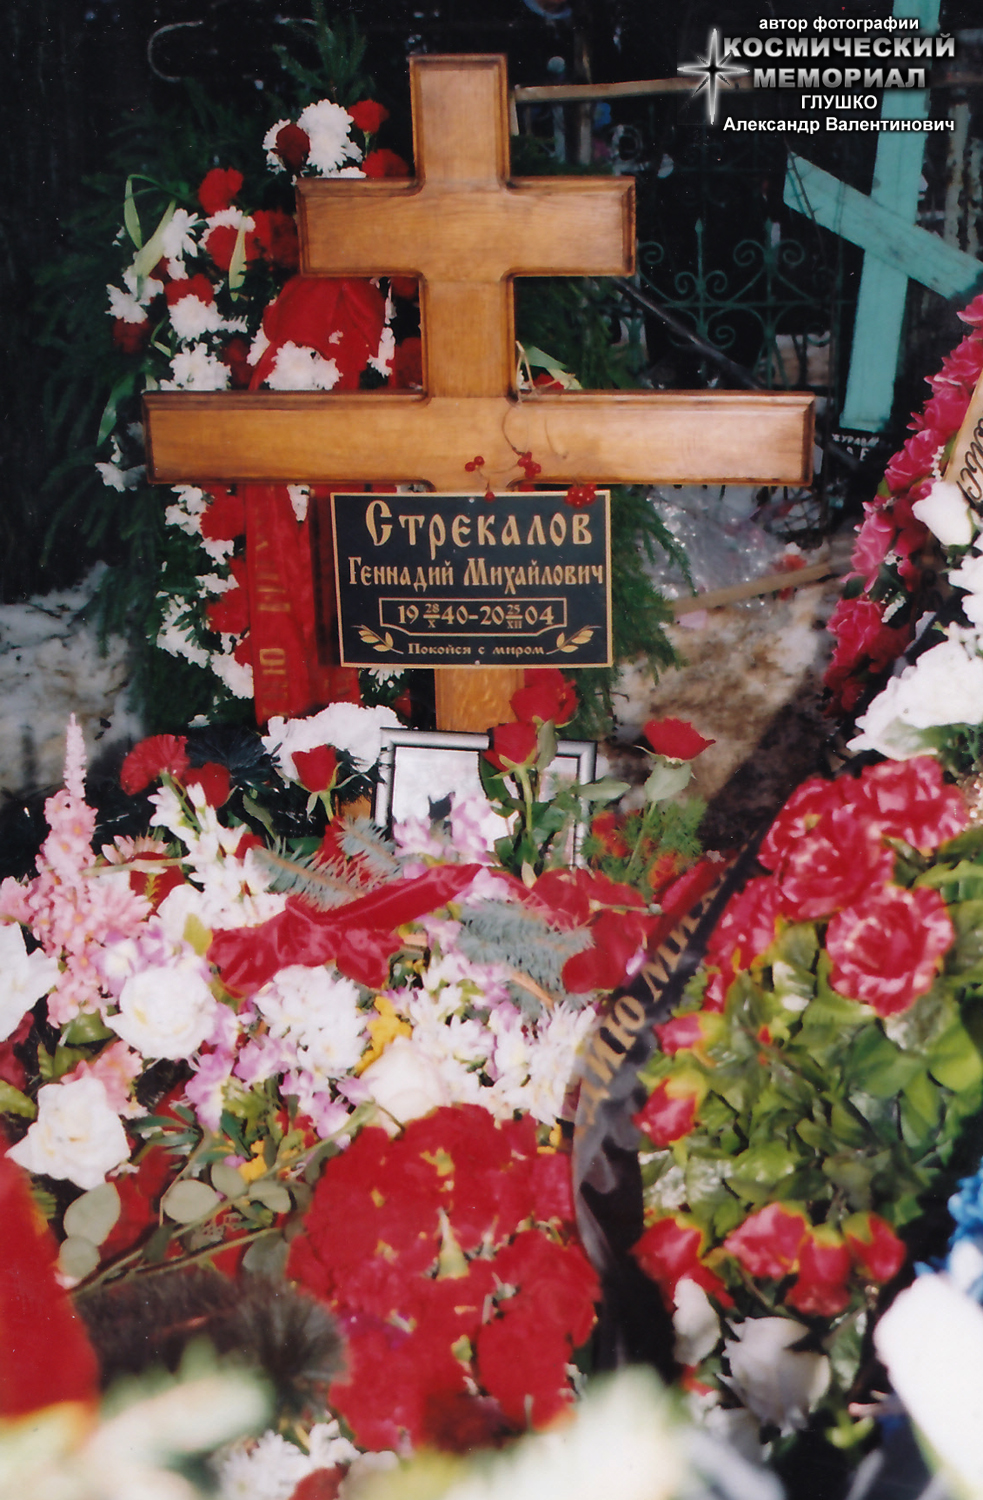 г. Москва, Останкинское кладбище. Могила Г.М. Стрекалова после похорон (автор фотографии - Глушко Александр Валентинович; 28 декабря 2004 года)